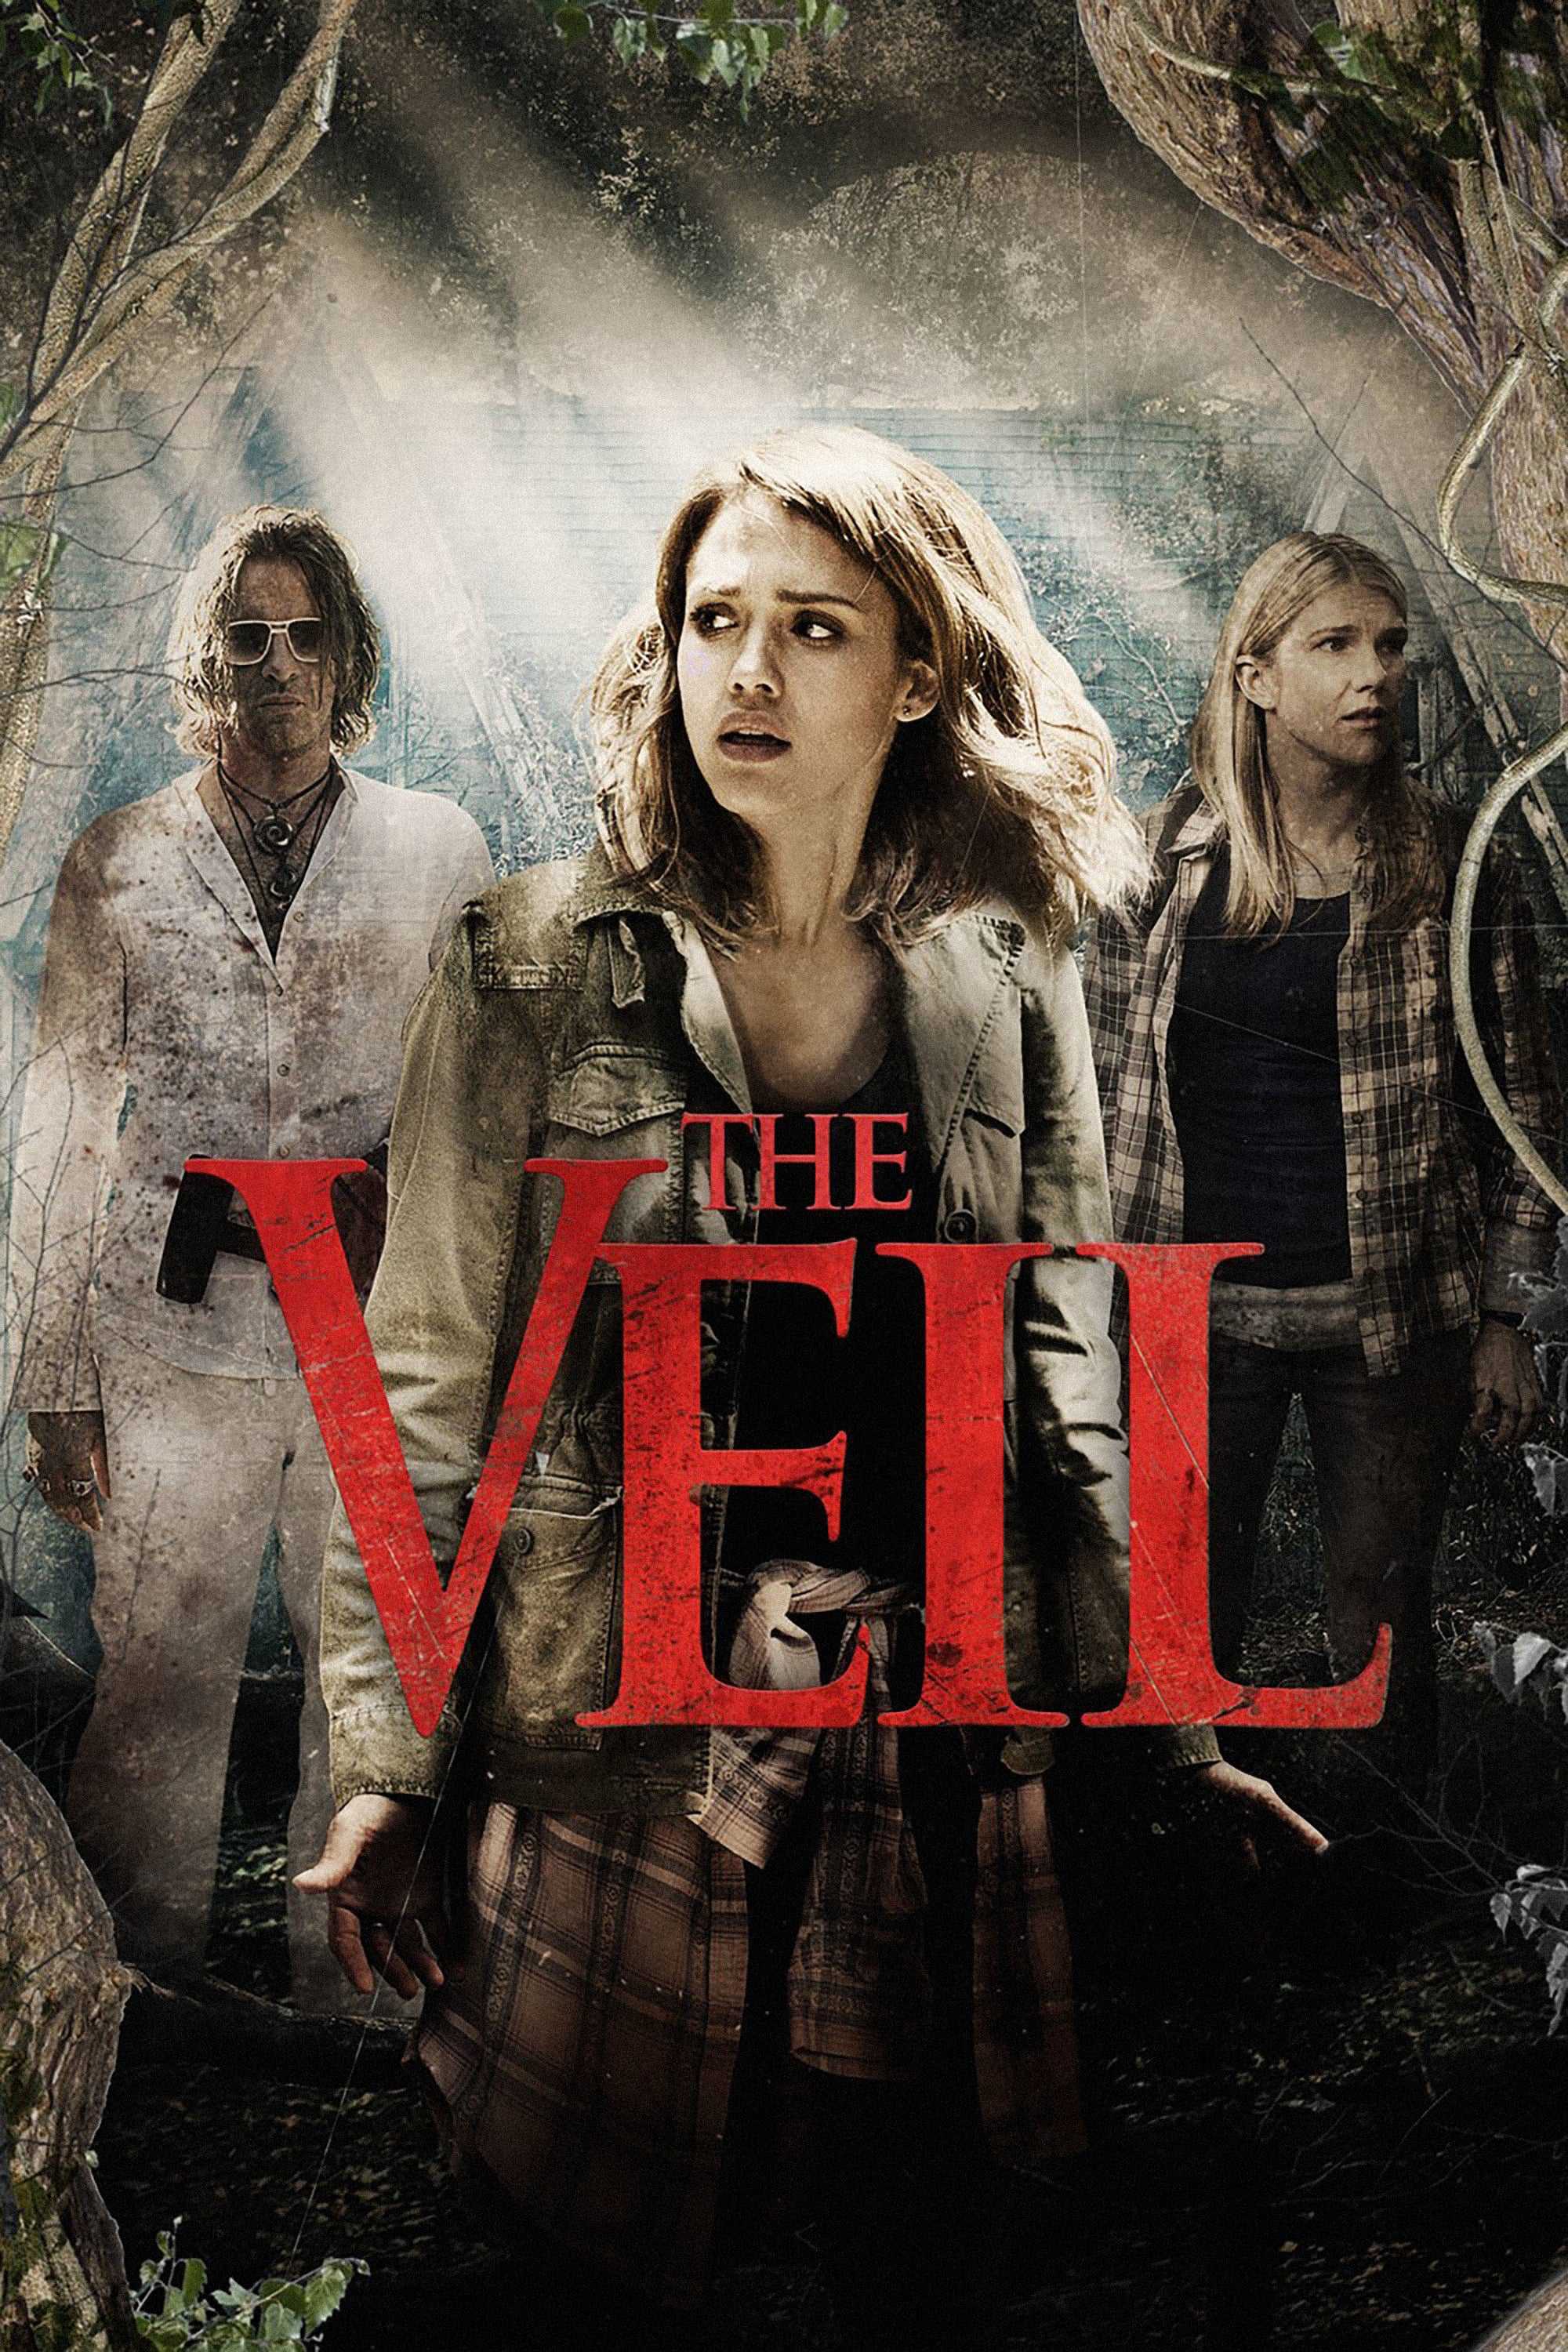 The veil - The veil